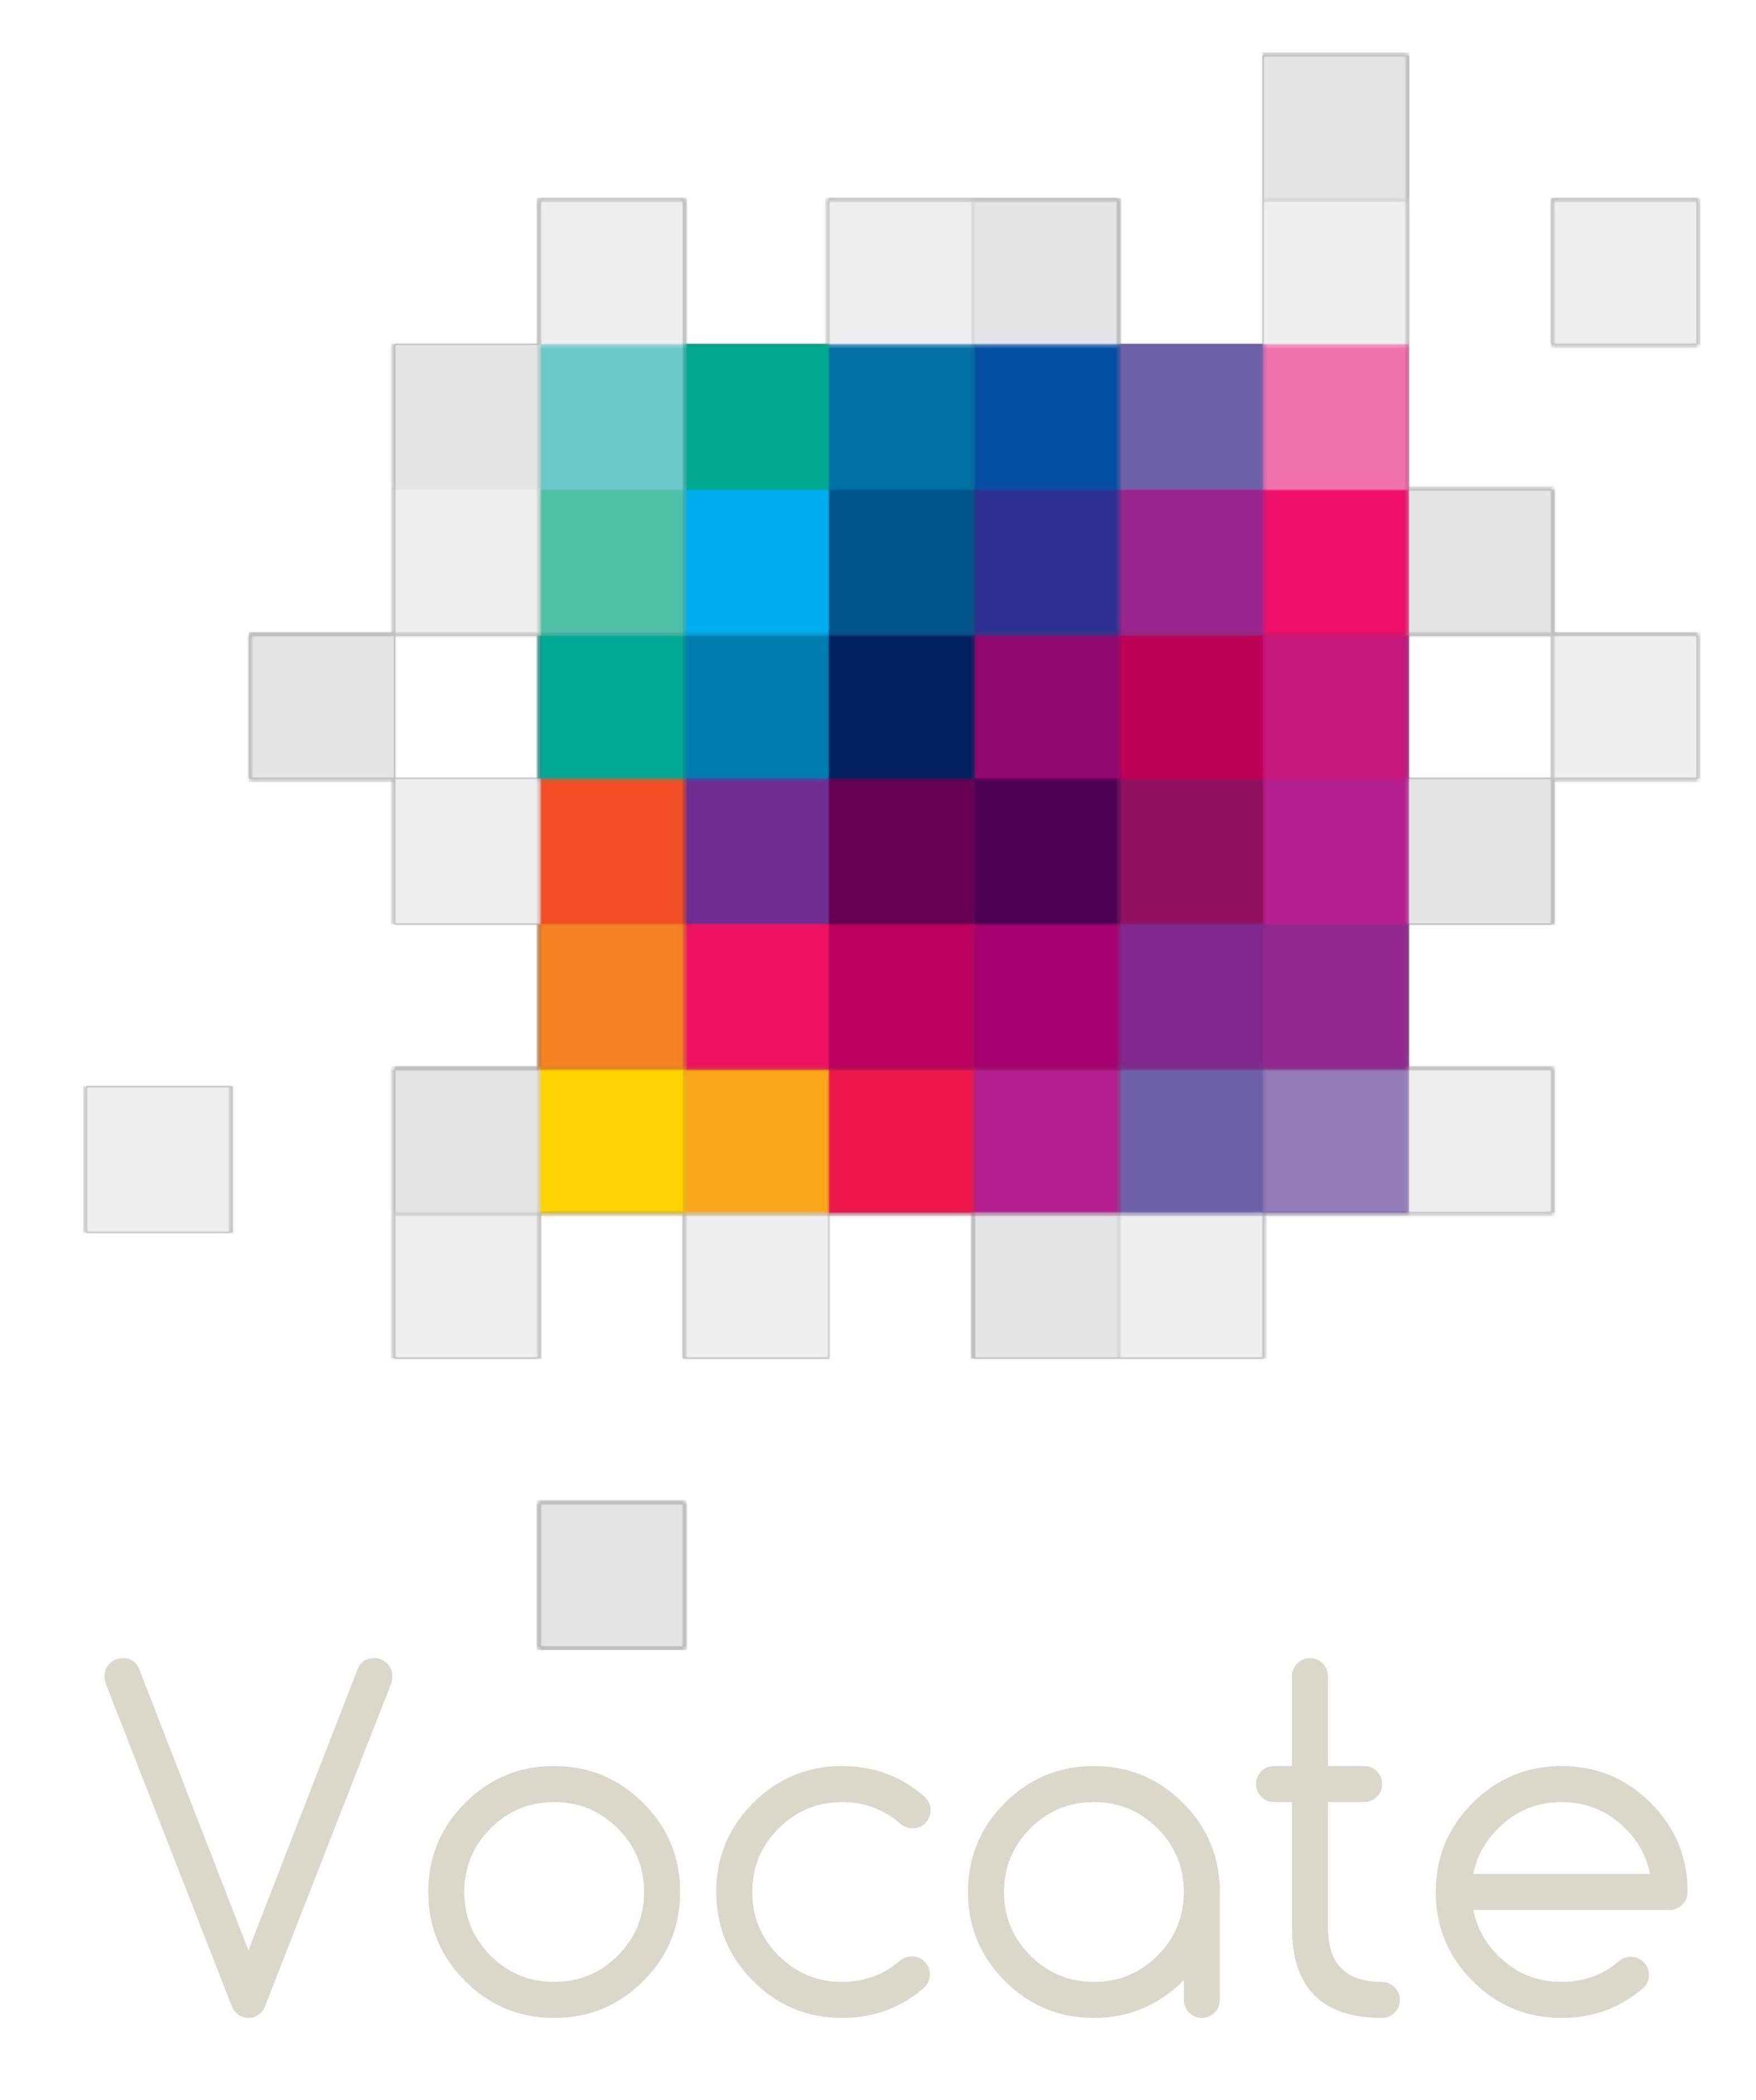 Vocate Training logo